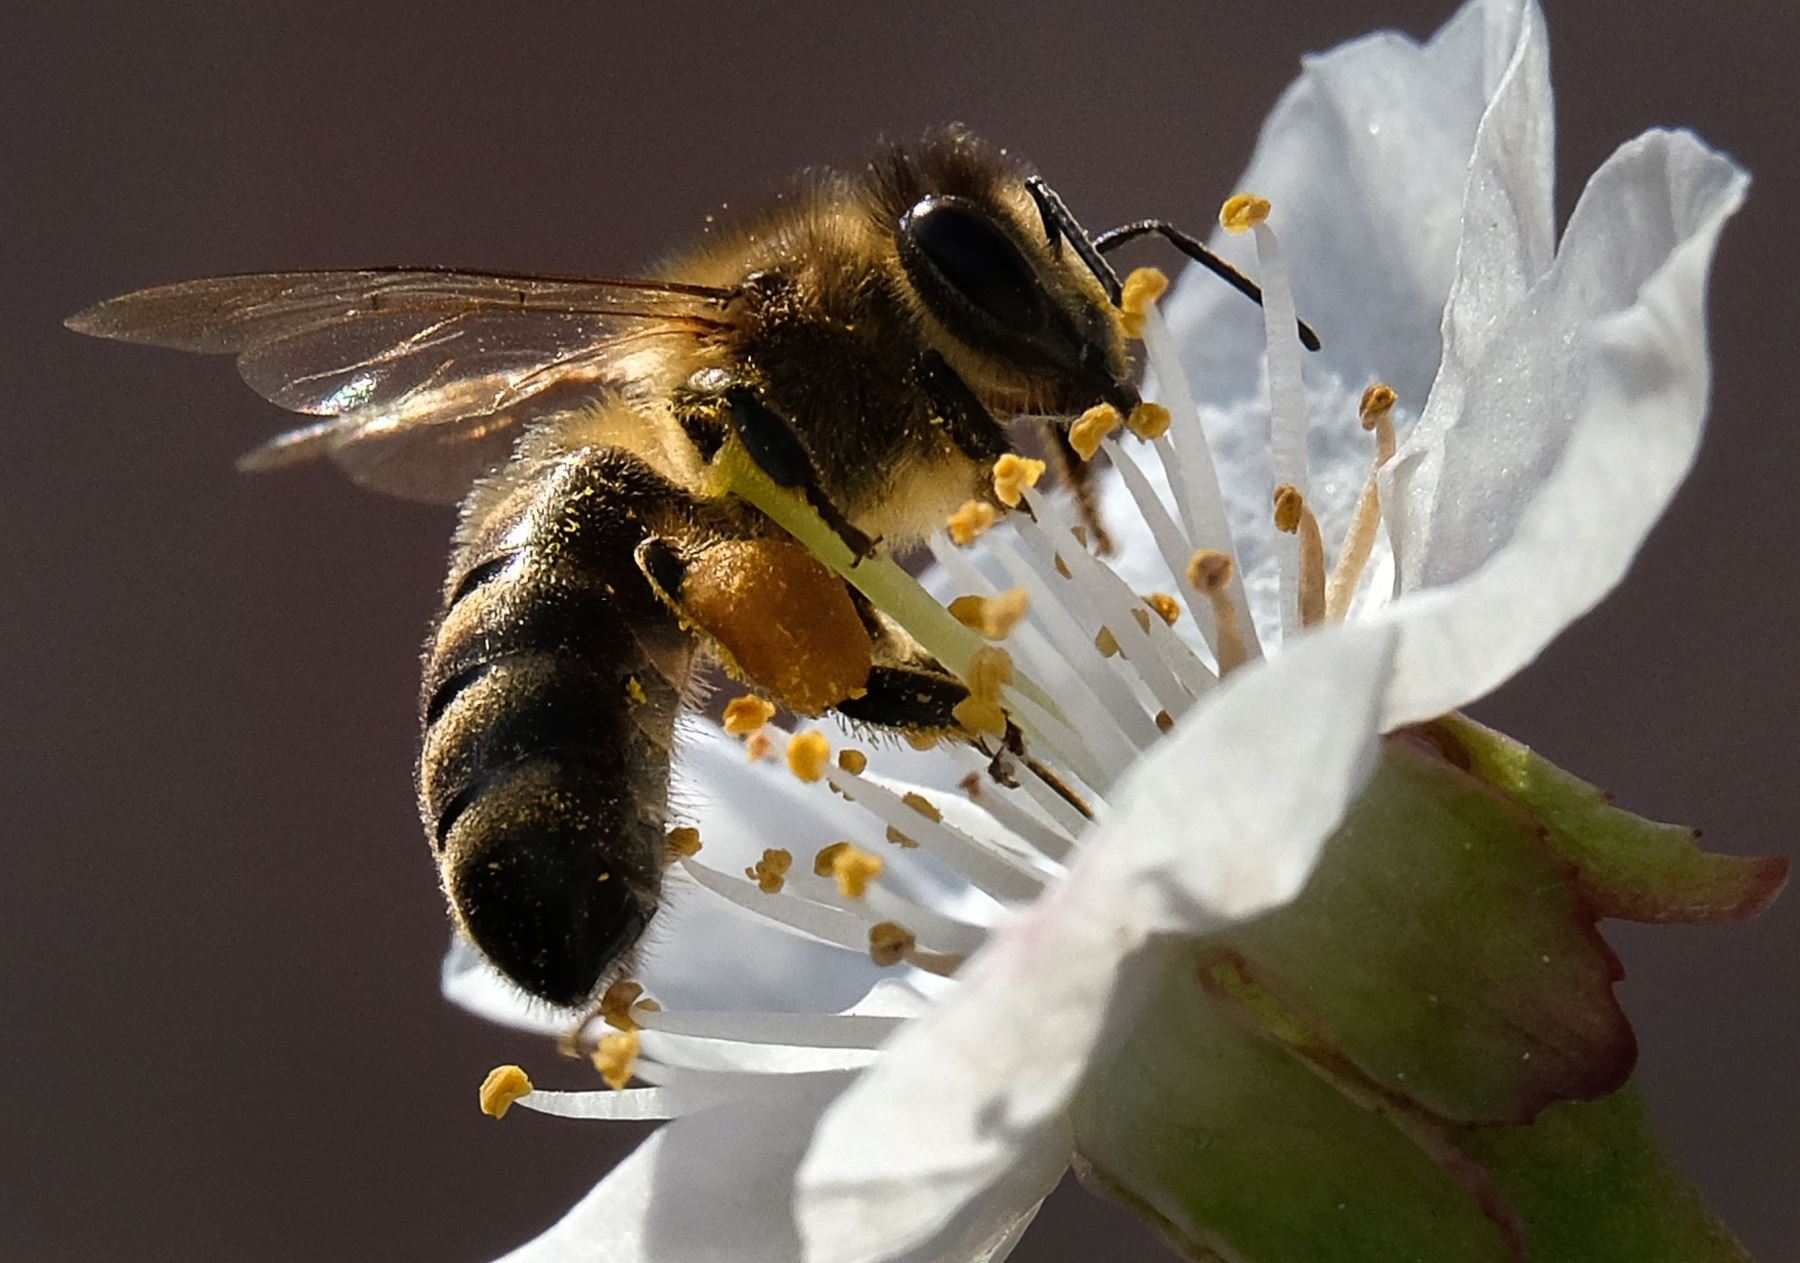 La ONU anima a proteger a las abejas para garantizar la seguridad alimentaria.